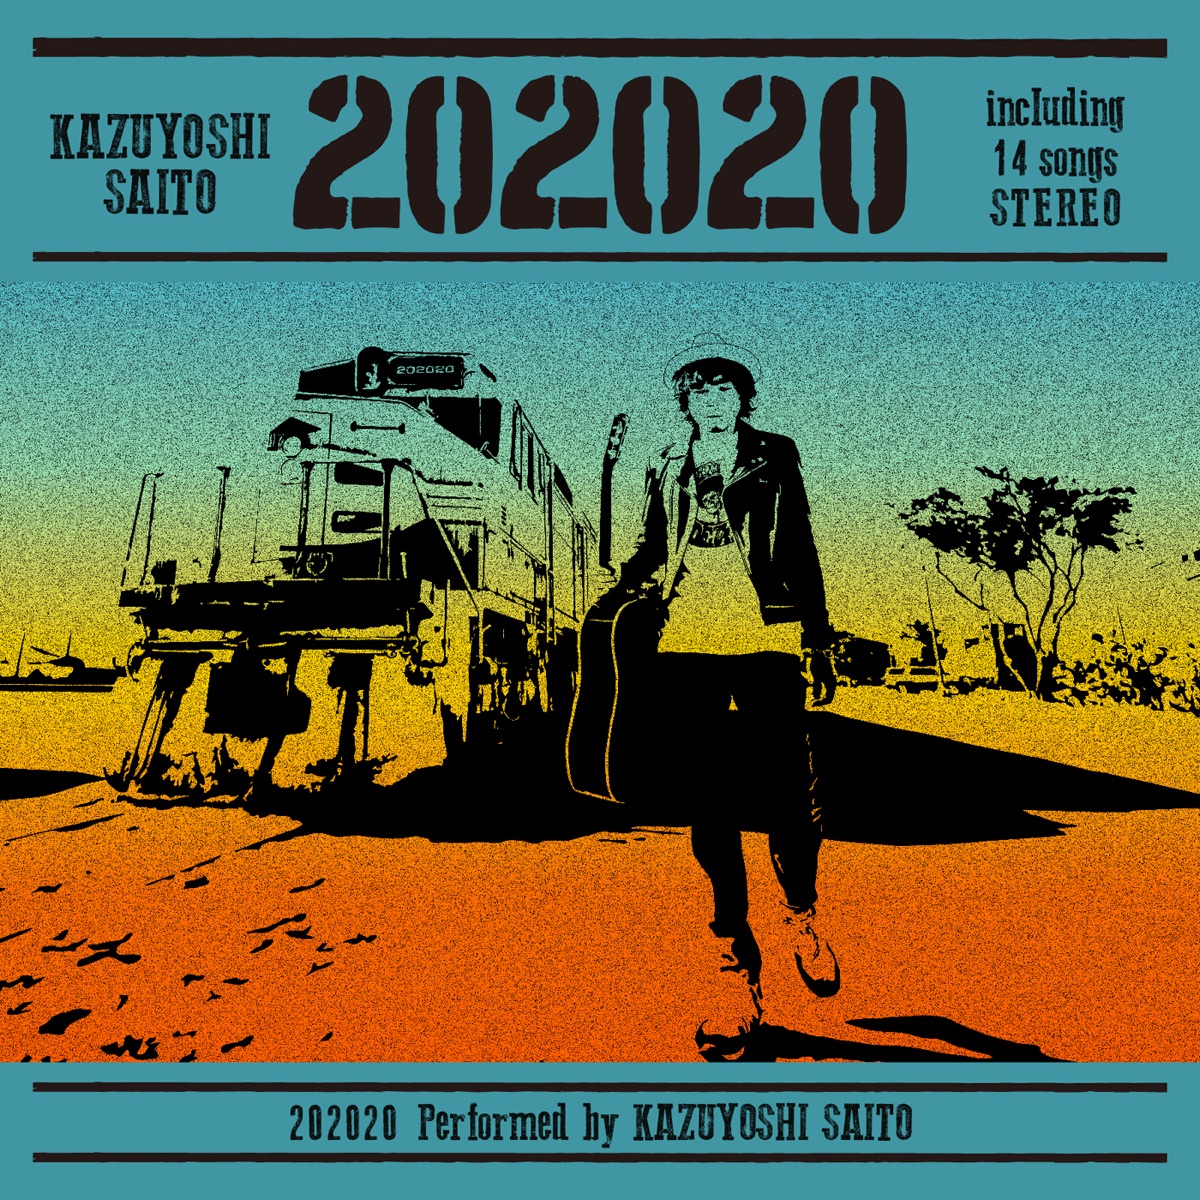 『斉藤和義 - 猫の毛 歌詞』収録の『202020』ジャケット